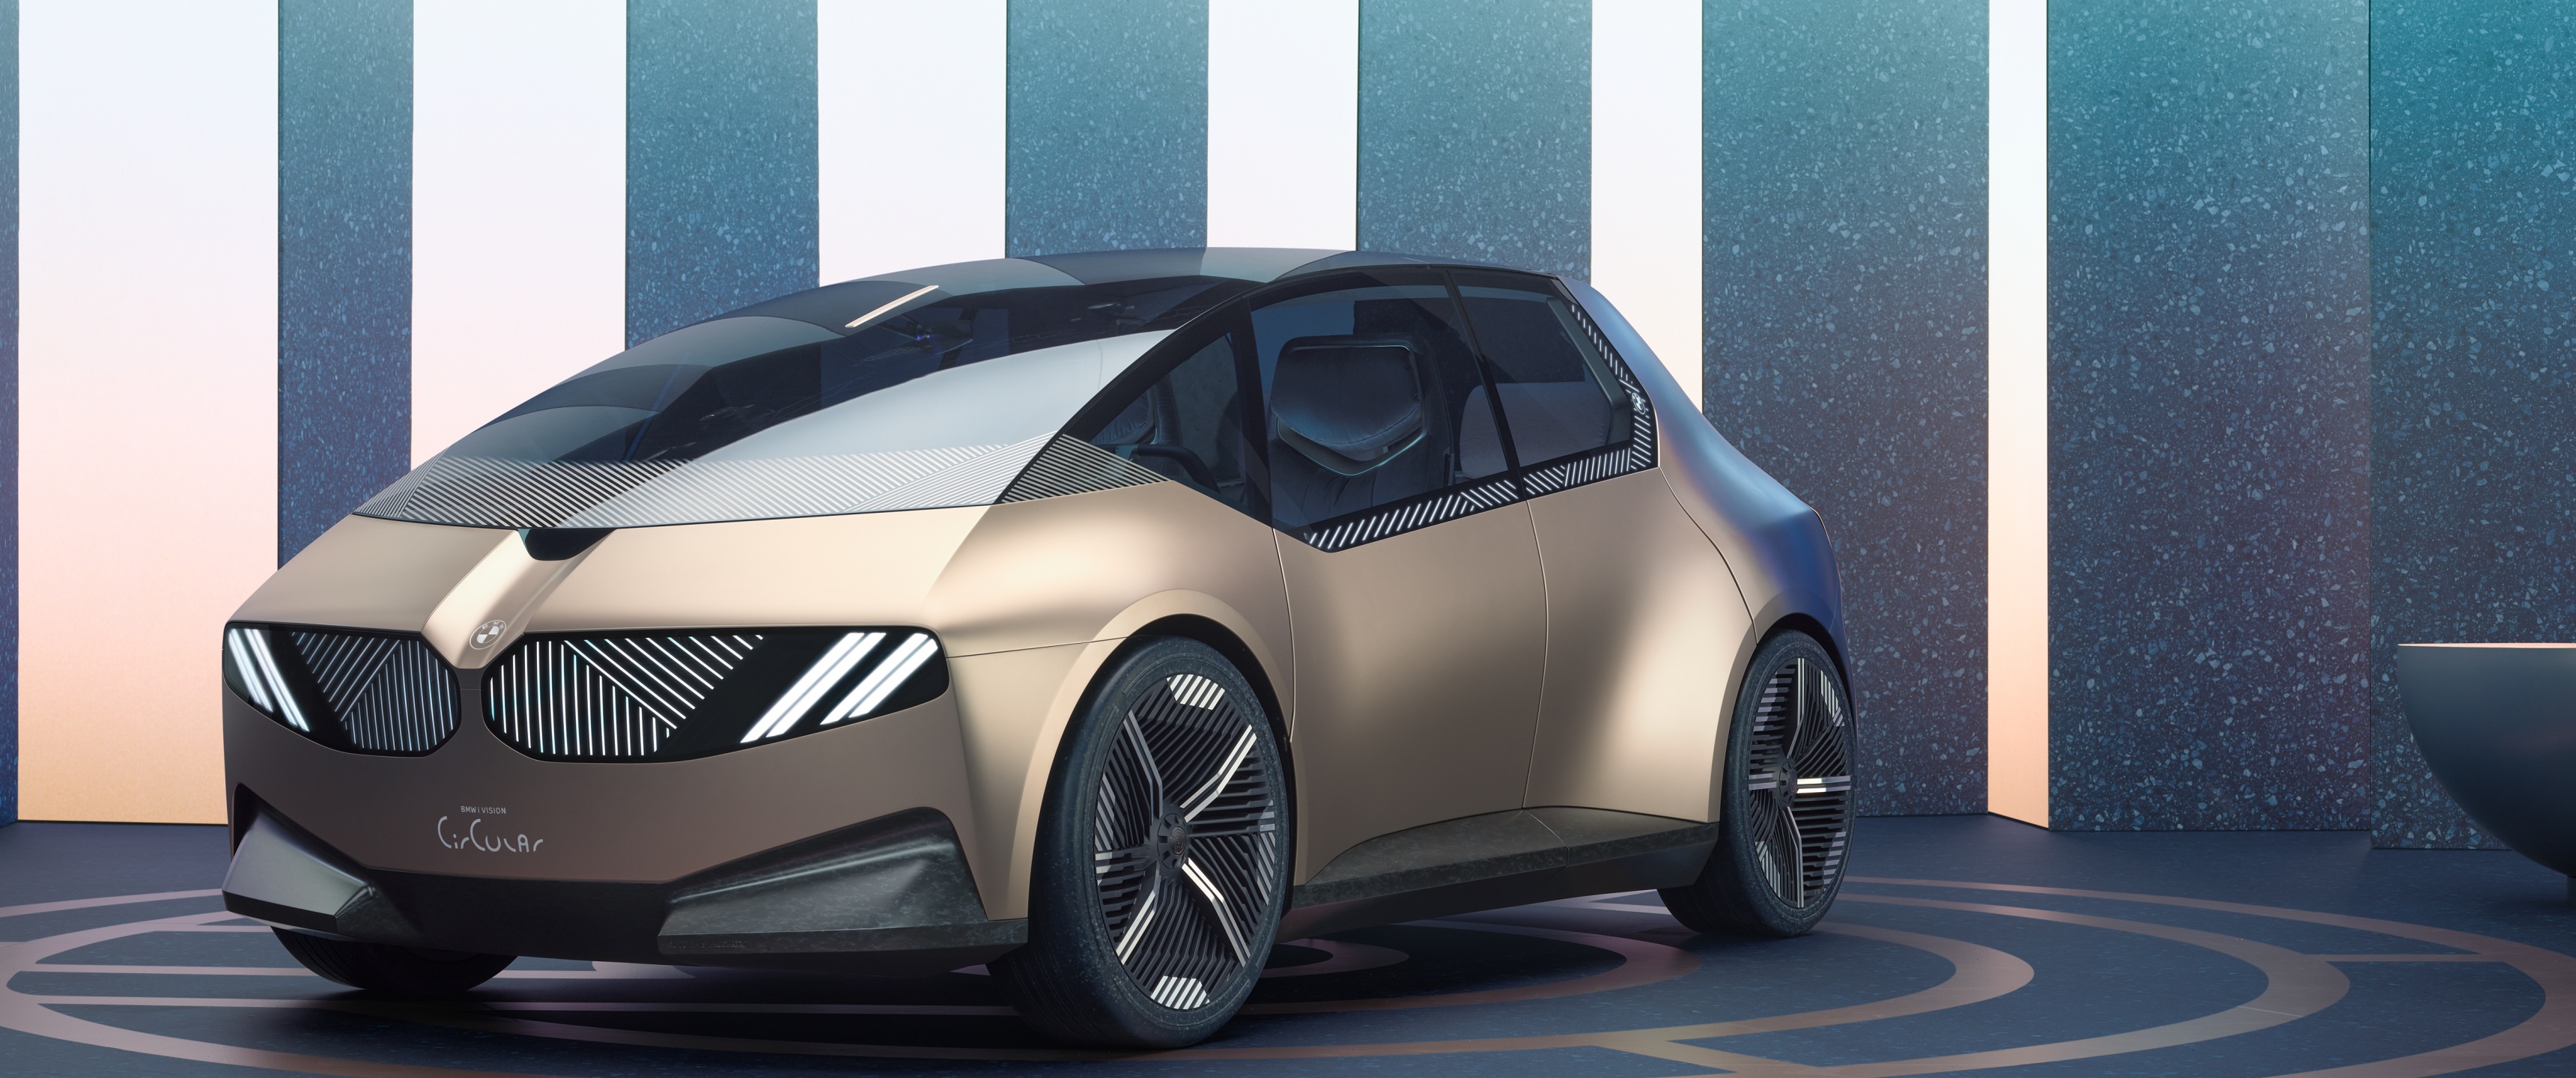 BMW i vision dynamics electric concept car debuts at IAA 2017